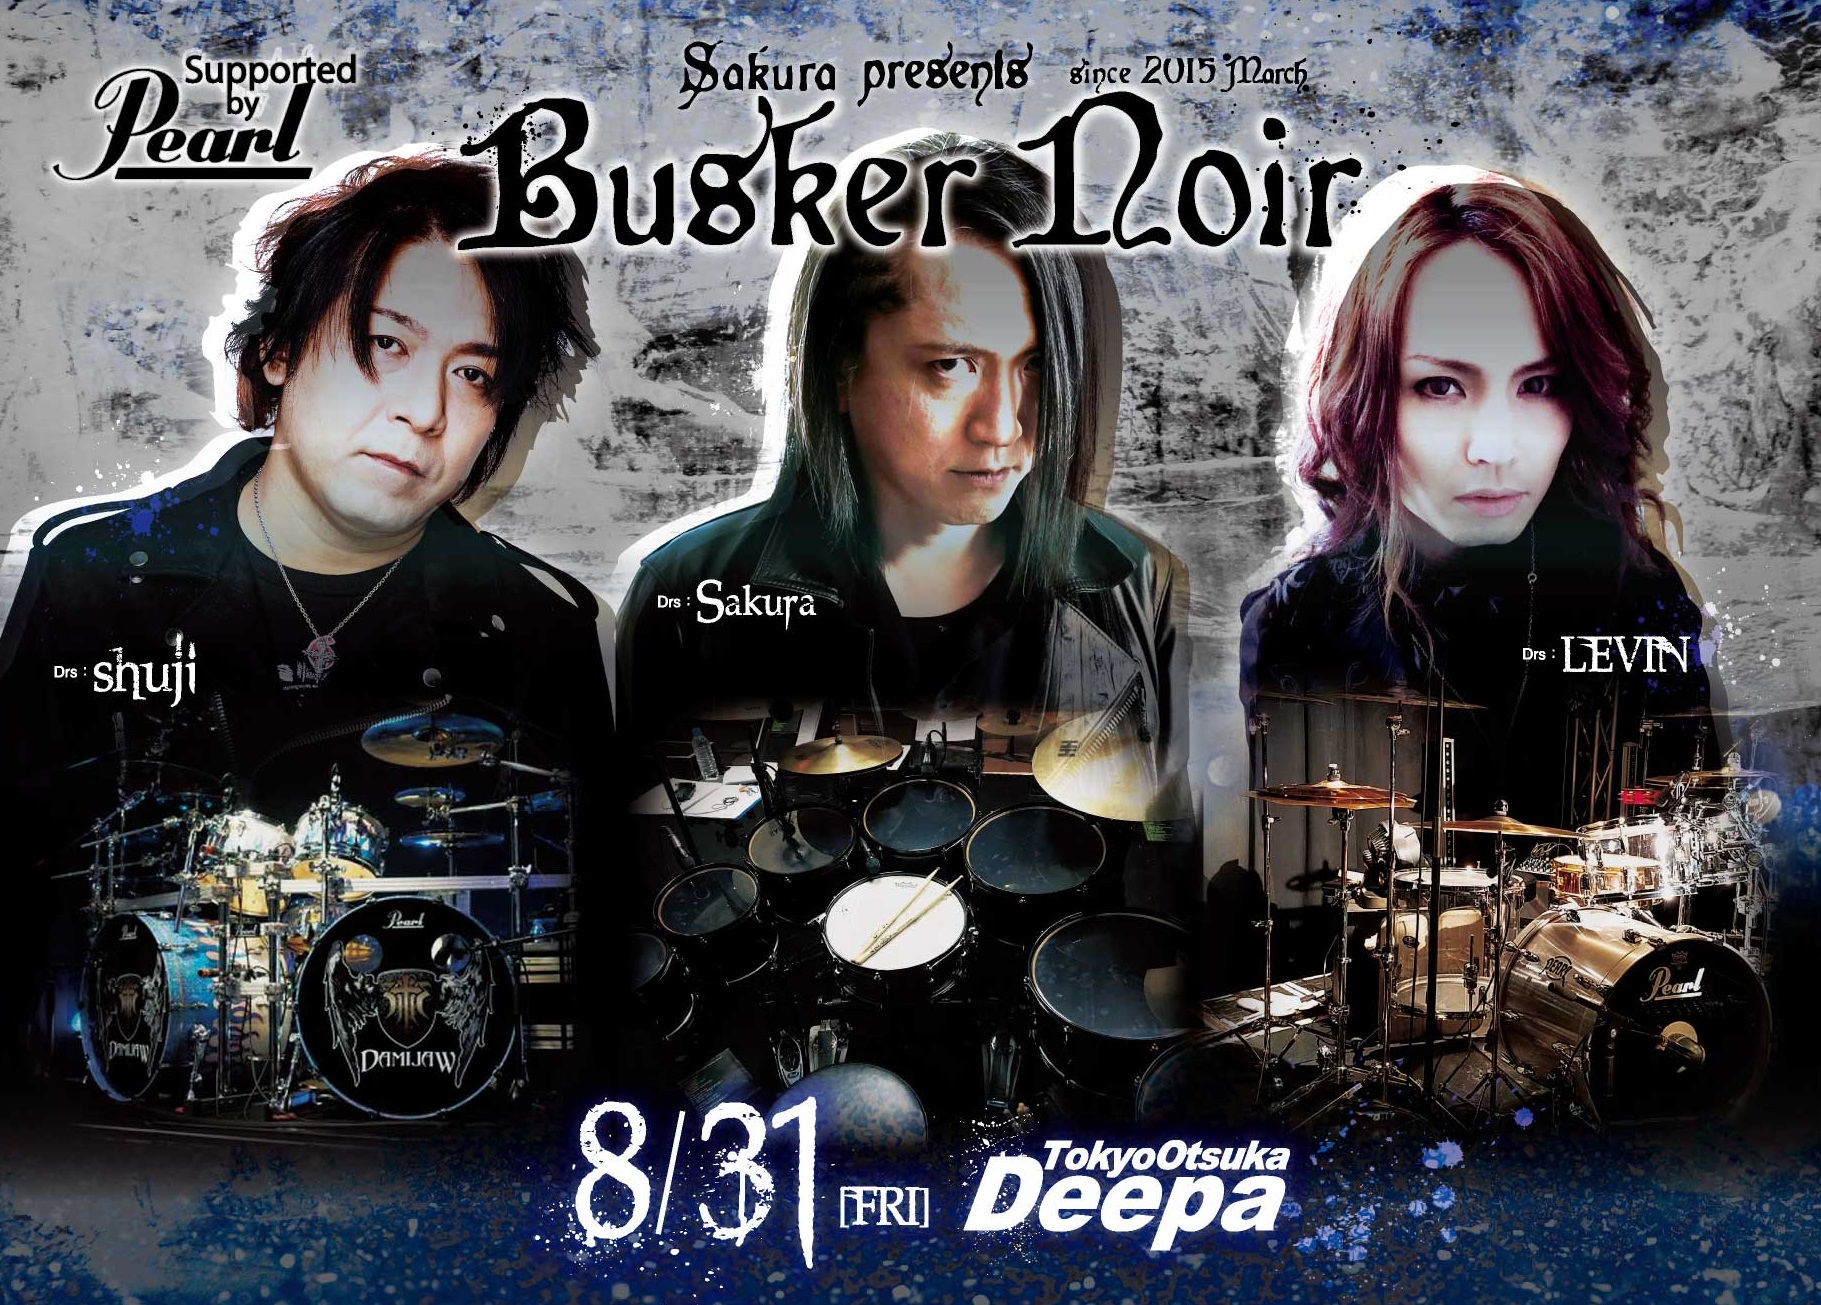 ドラムにスポットライトを当てたイベント【Busker Noir】@大塚Deepa